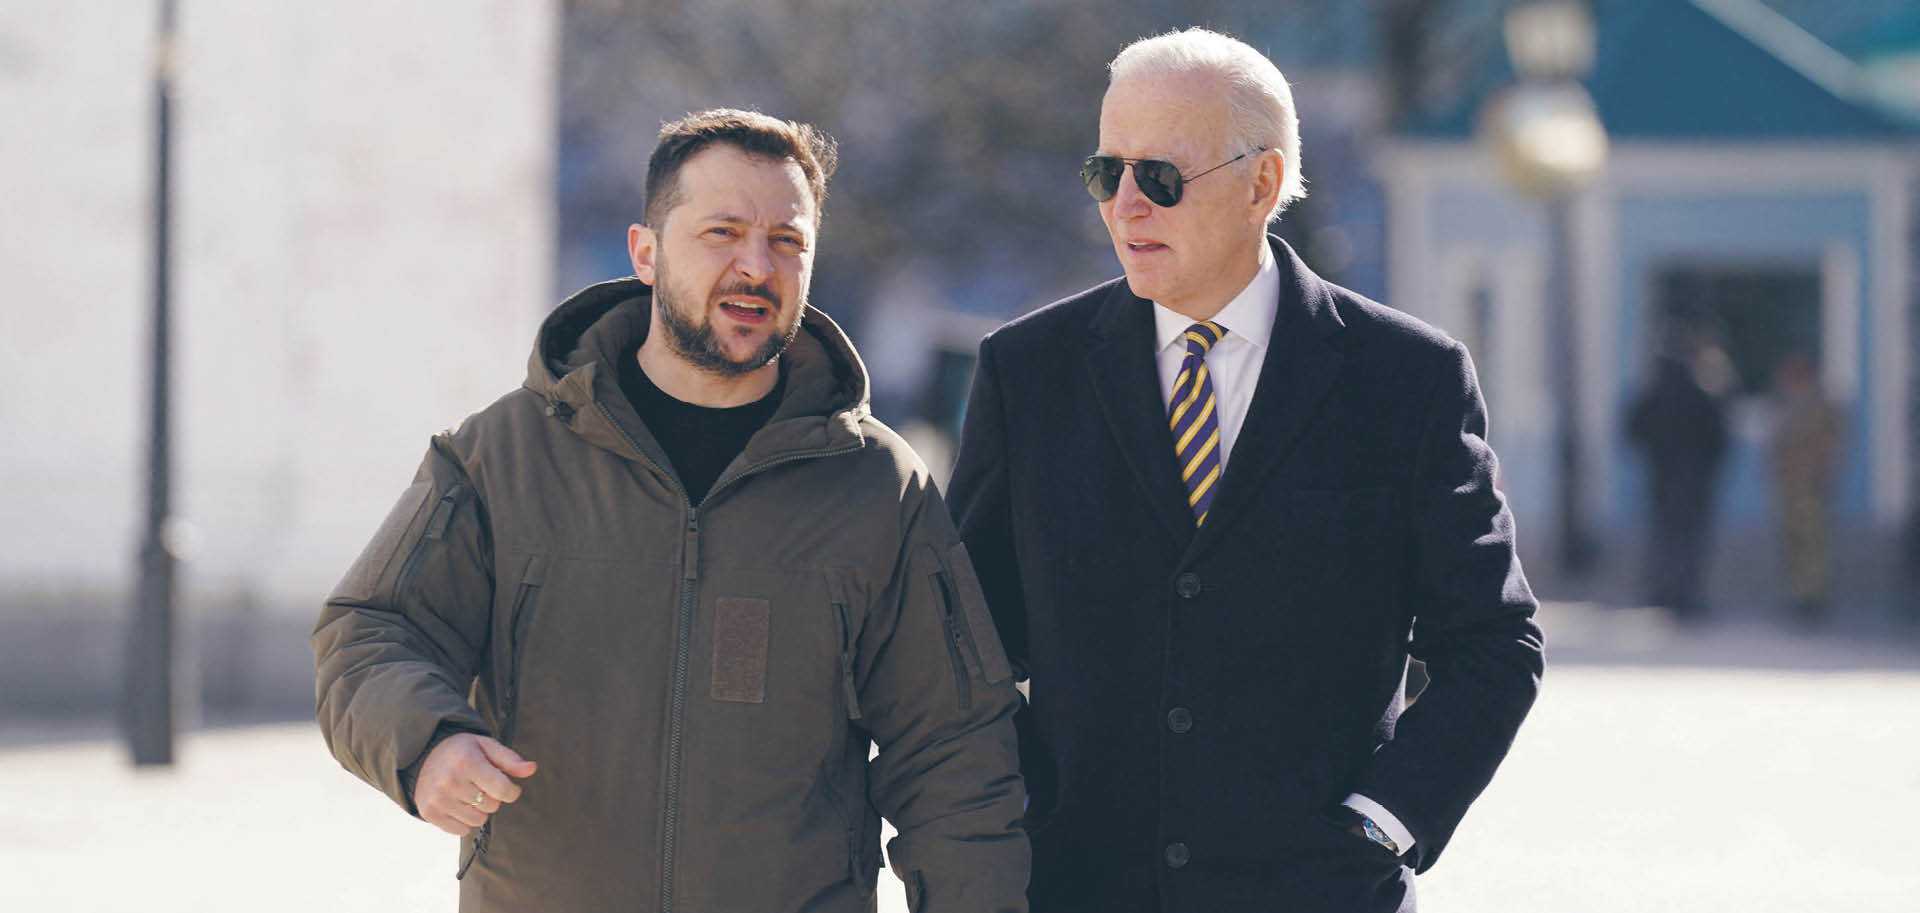 Joe Biden podczas lutowej wizyty w Kijowie z prezydentem Ukrainy Wołodymyrem Zełenskim